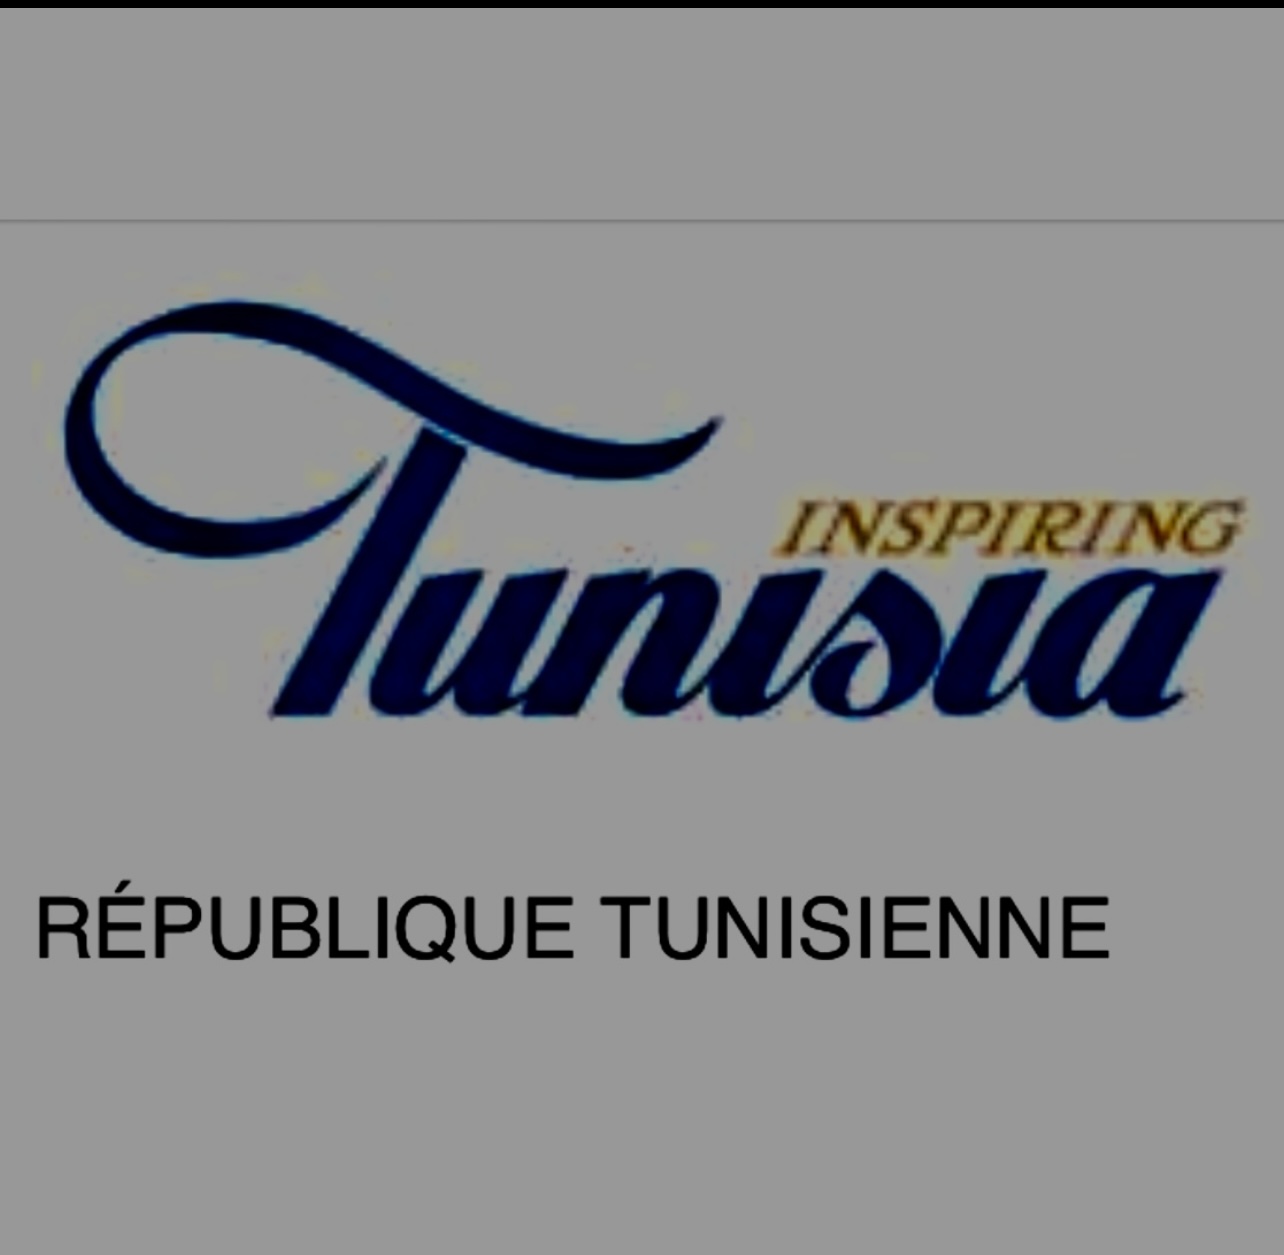 Le logo Appel d'offres pour la République Tunisienne.